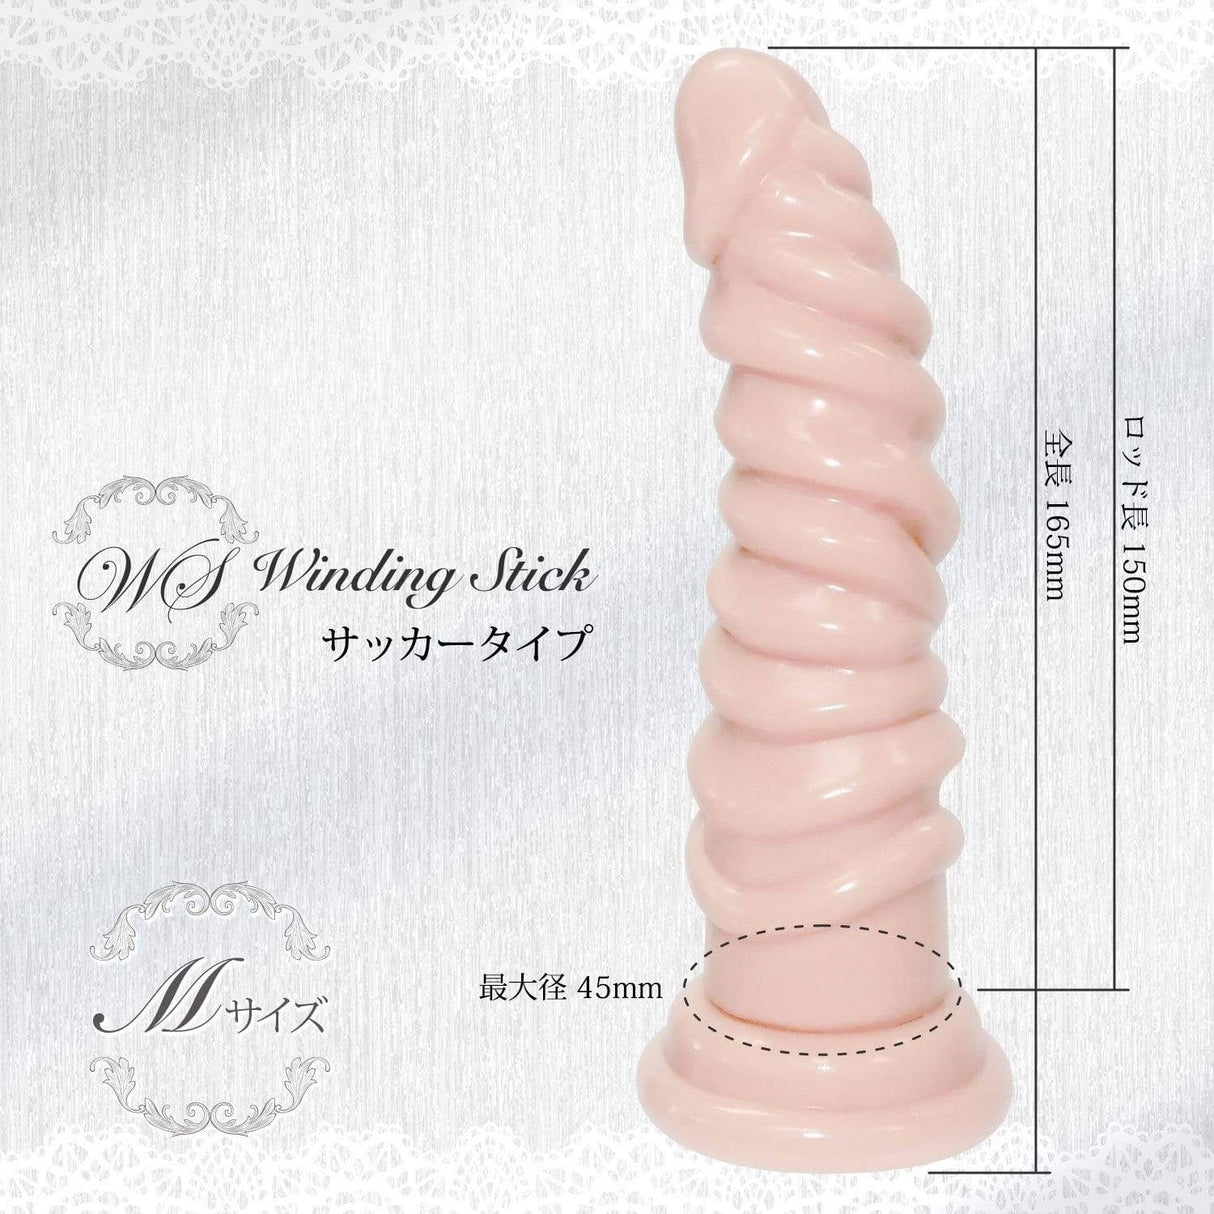 Magic Eyes - Winding Stick Sucker M Dildo (Beige) MG1082 CherryAffairs